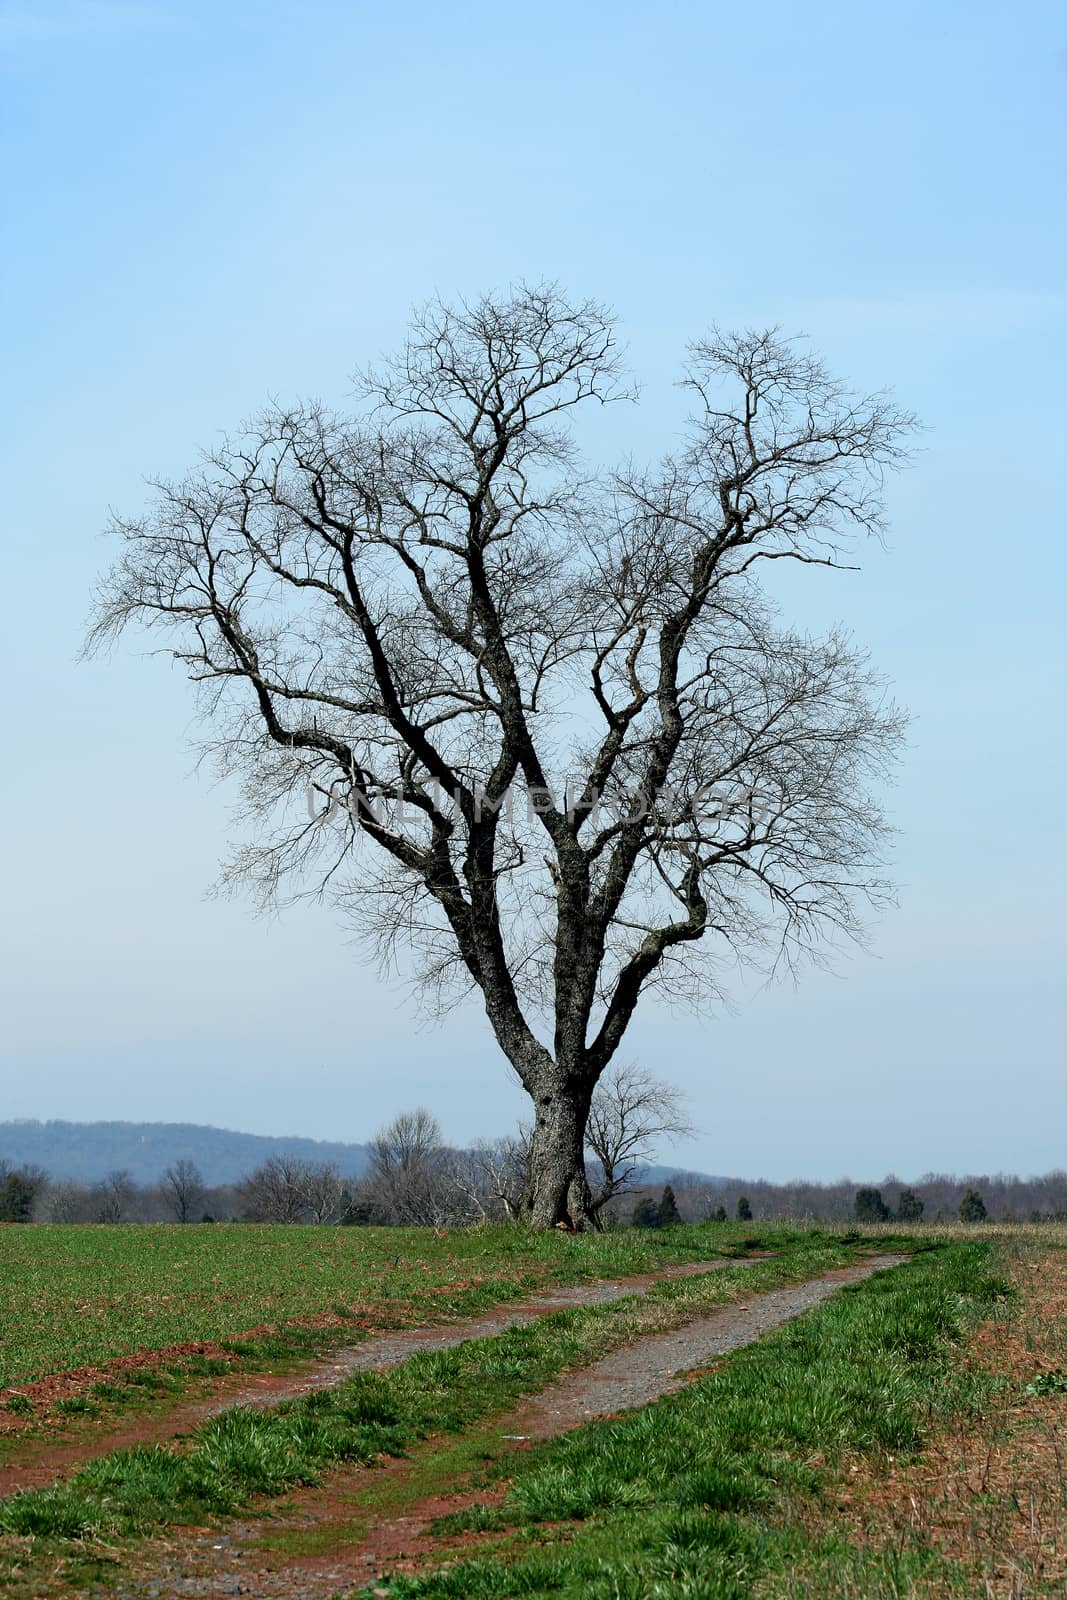 A Lone tree in a field